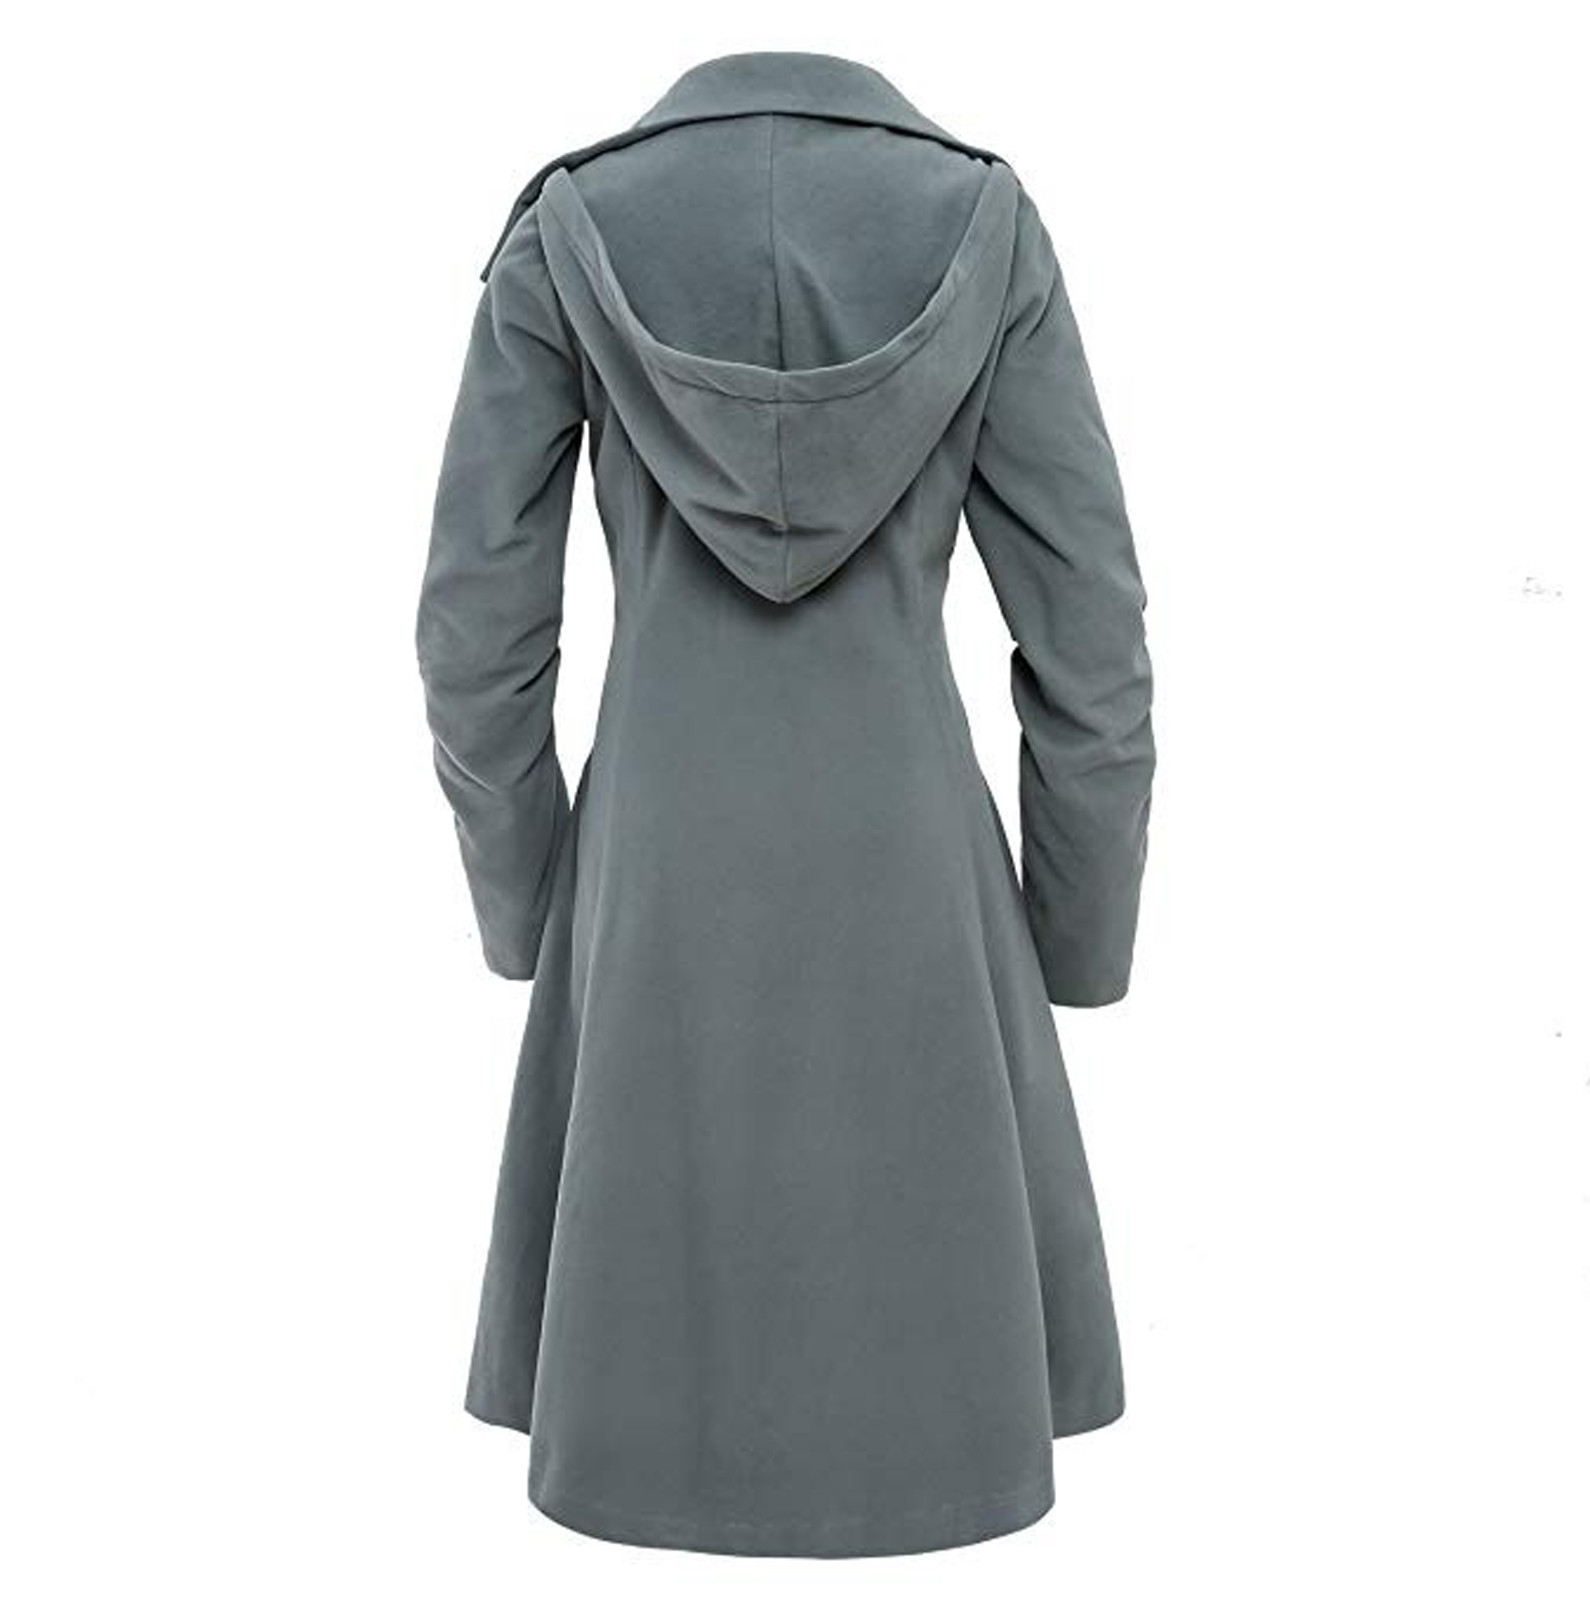 Bescita Women Faux Wool Warm Slim Coat Jacket Thick-Parka Overcoat Long Winter Outwear - image 2 of 5